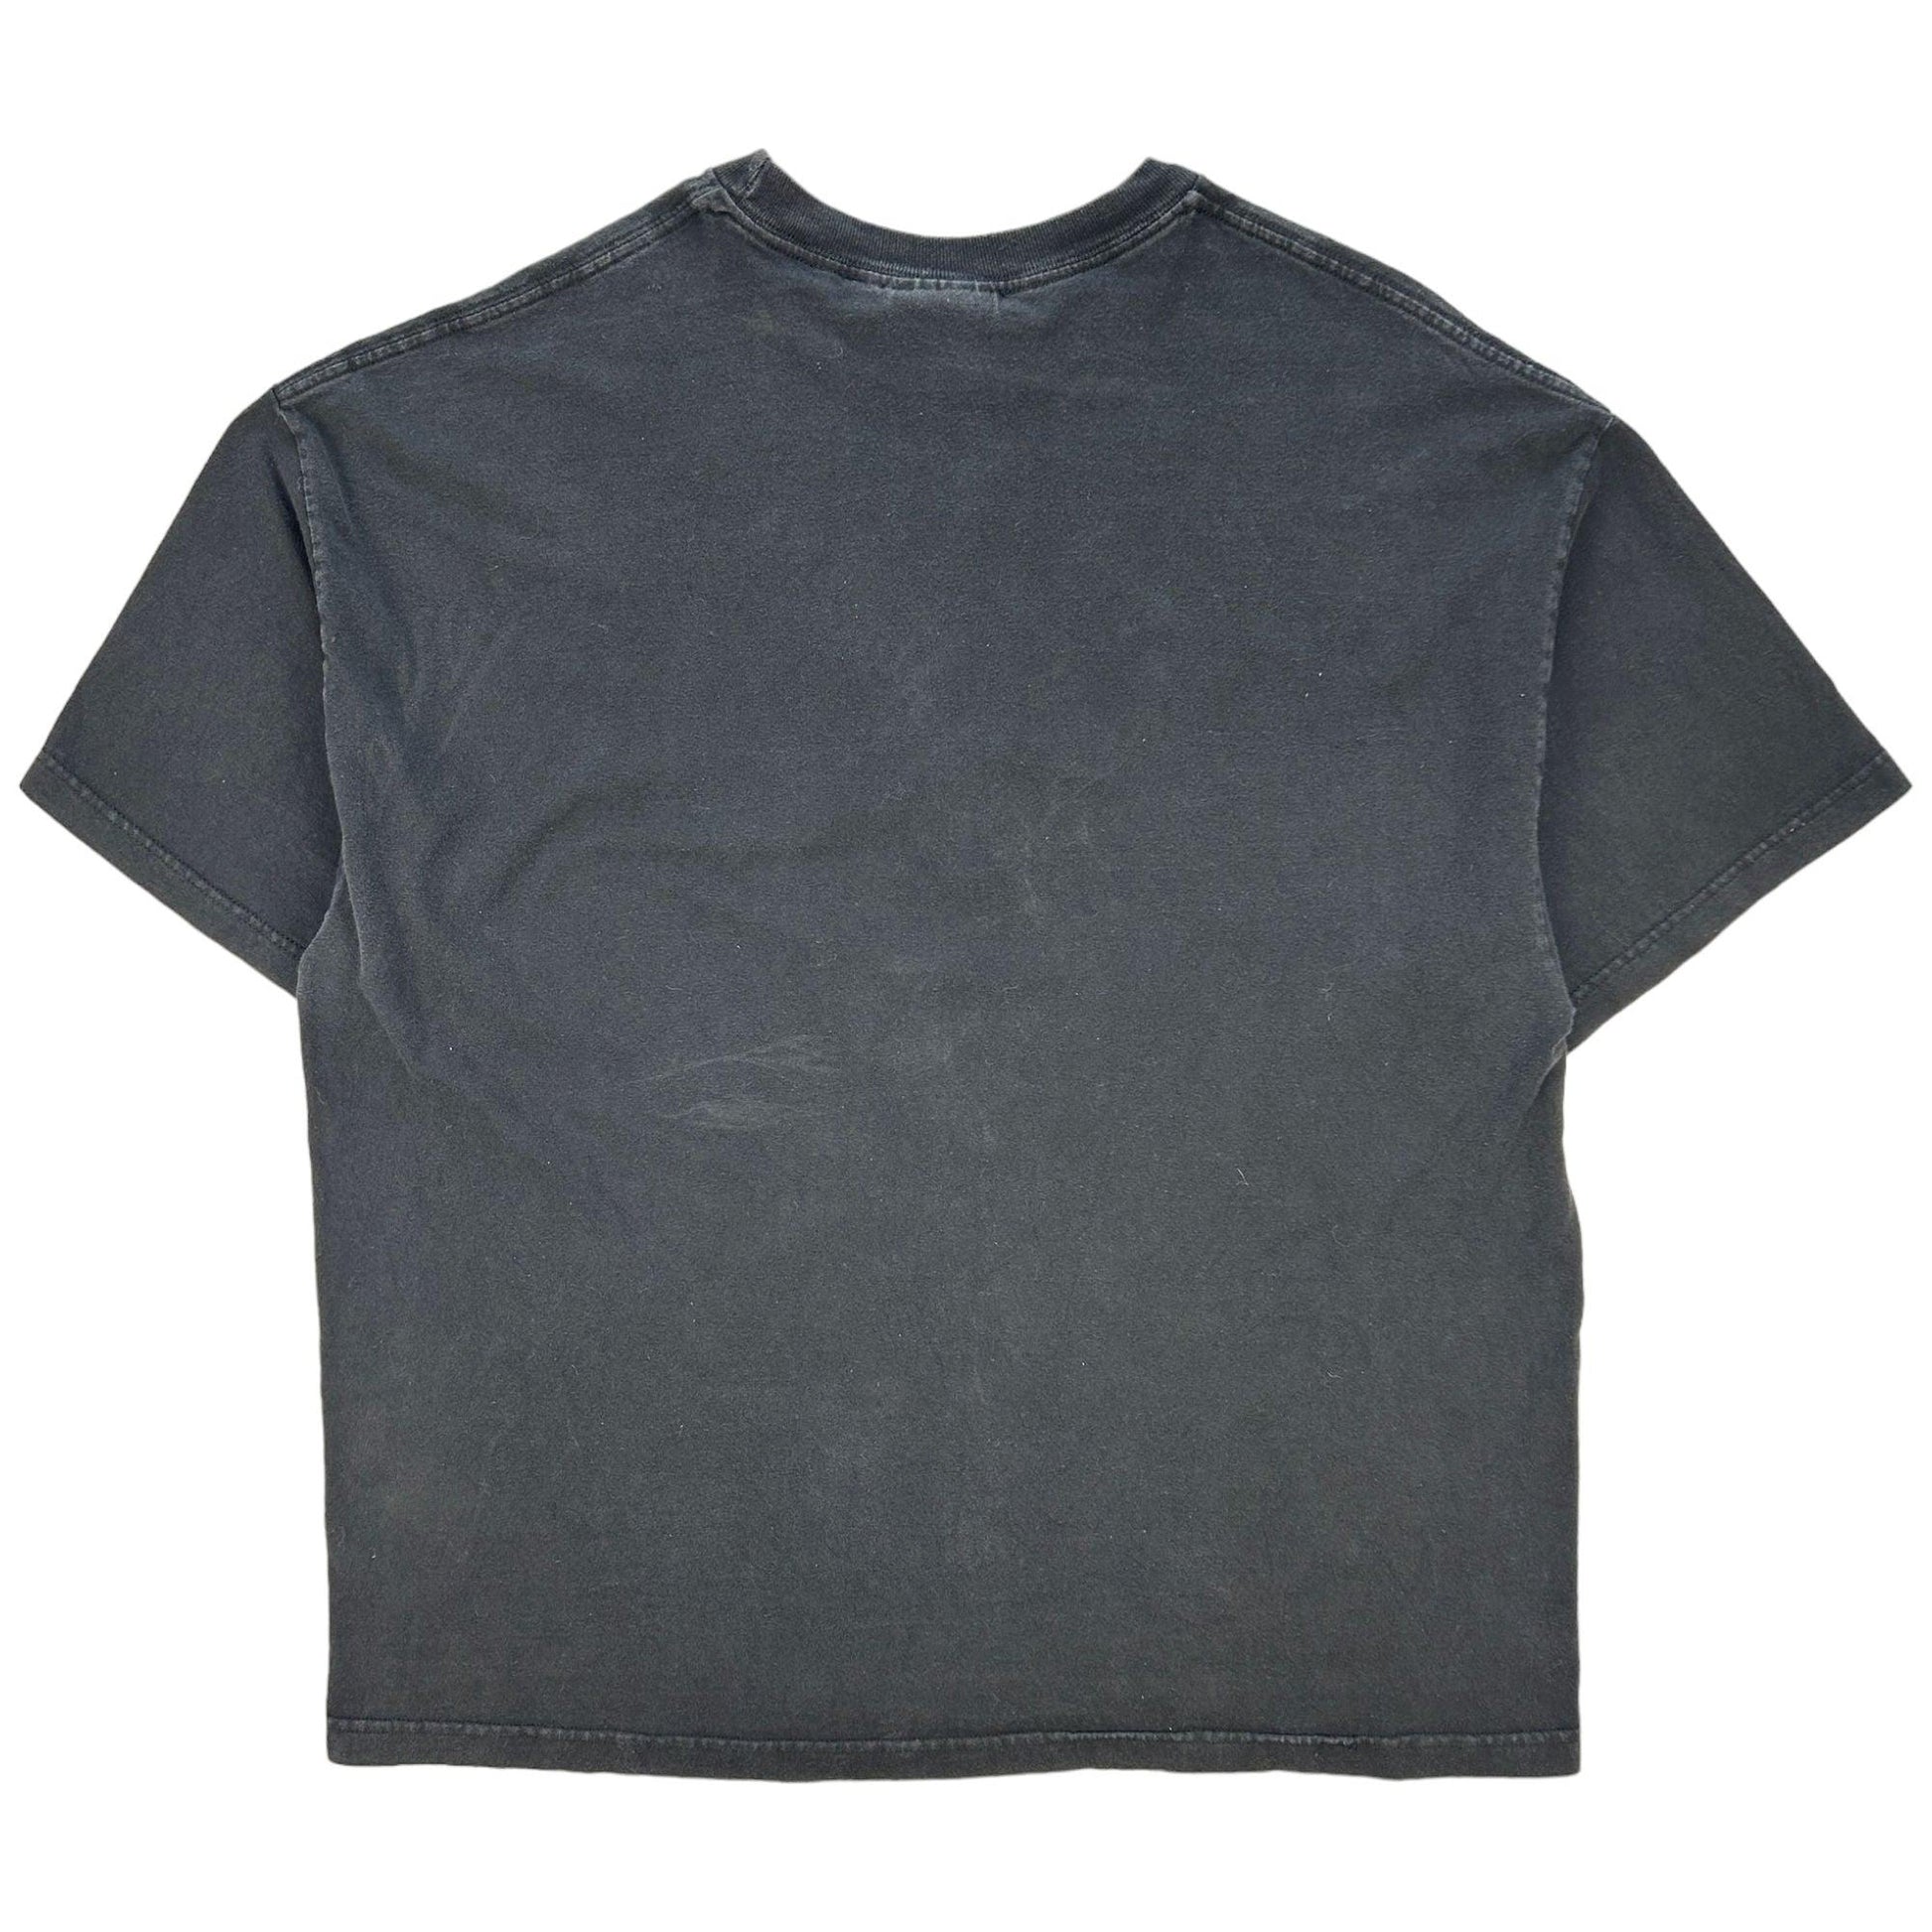 Vintage Venom Graphic T Shirt Size XXL - Known Source